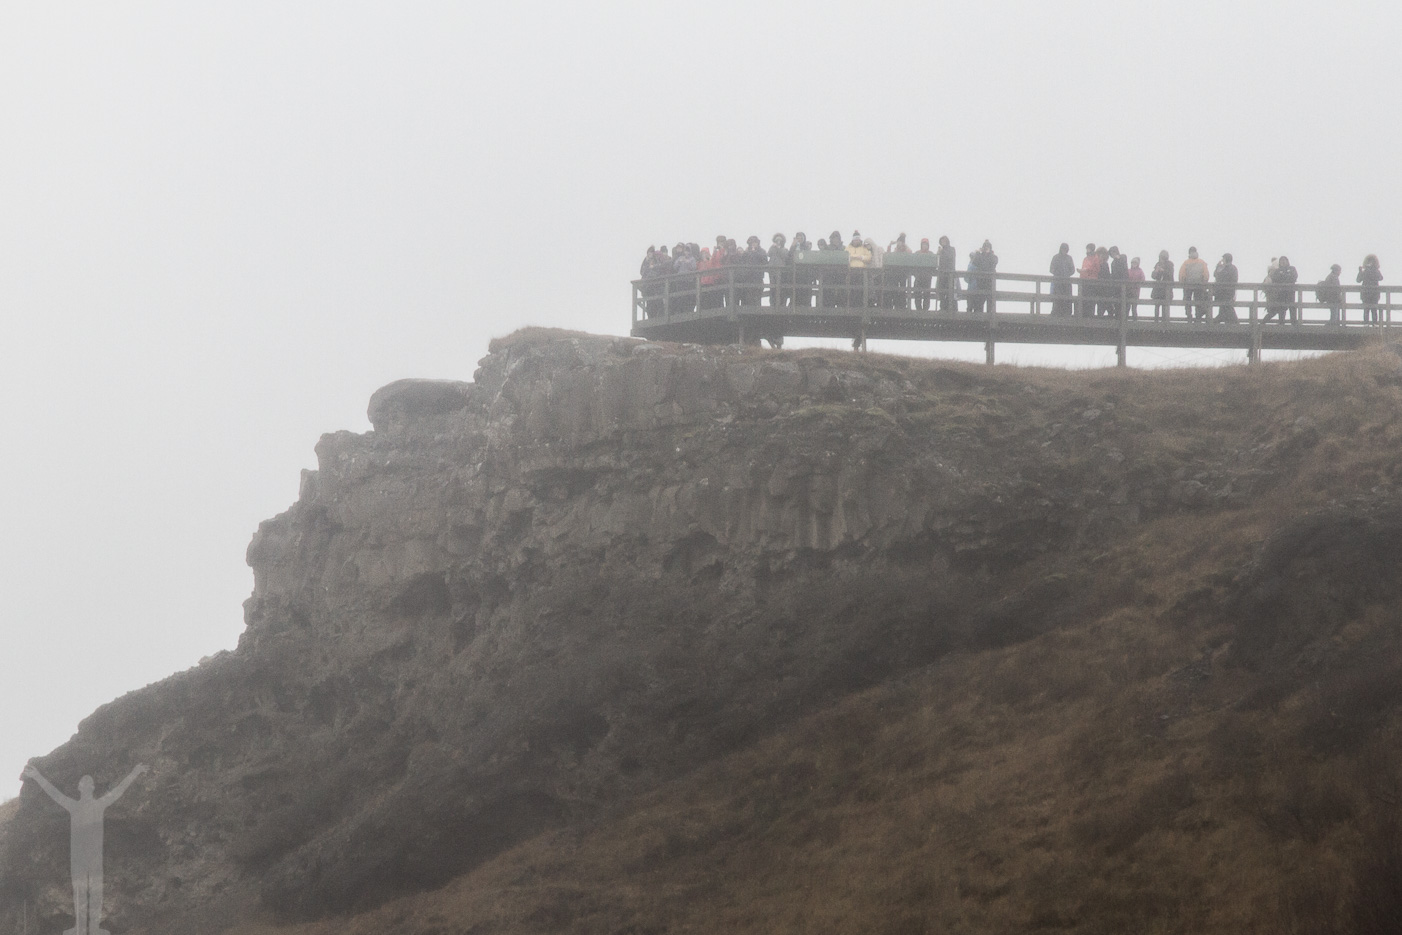 Vattenfallet Gullfoss på Island